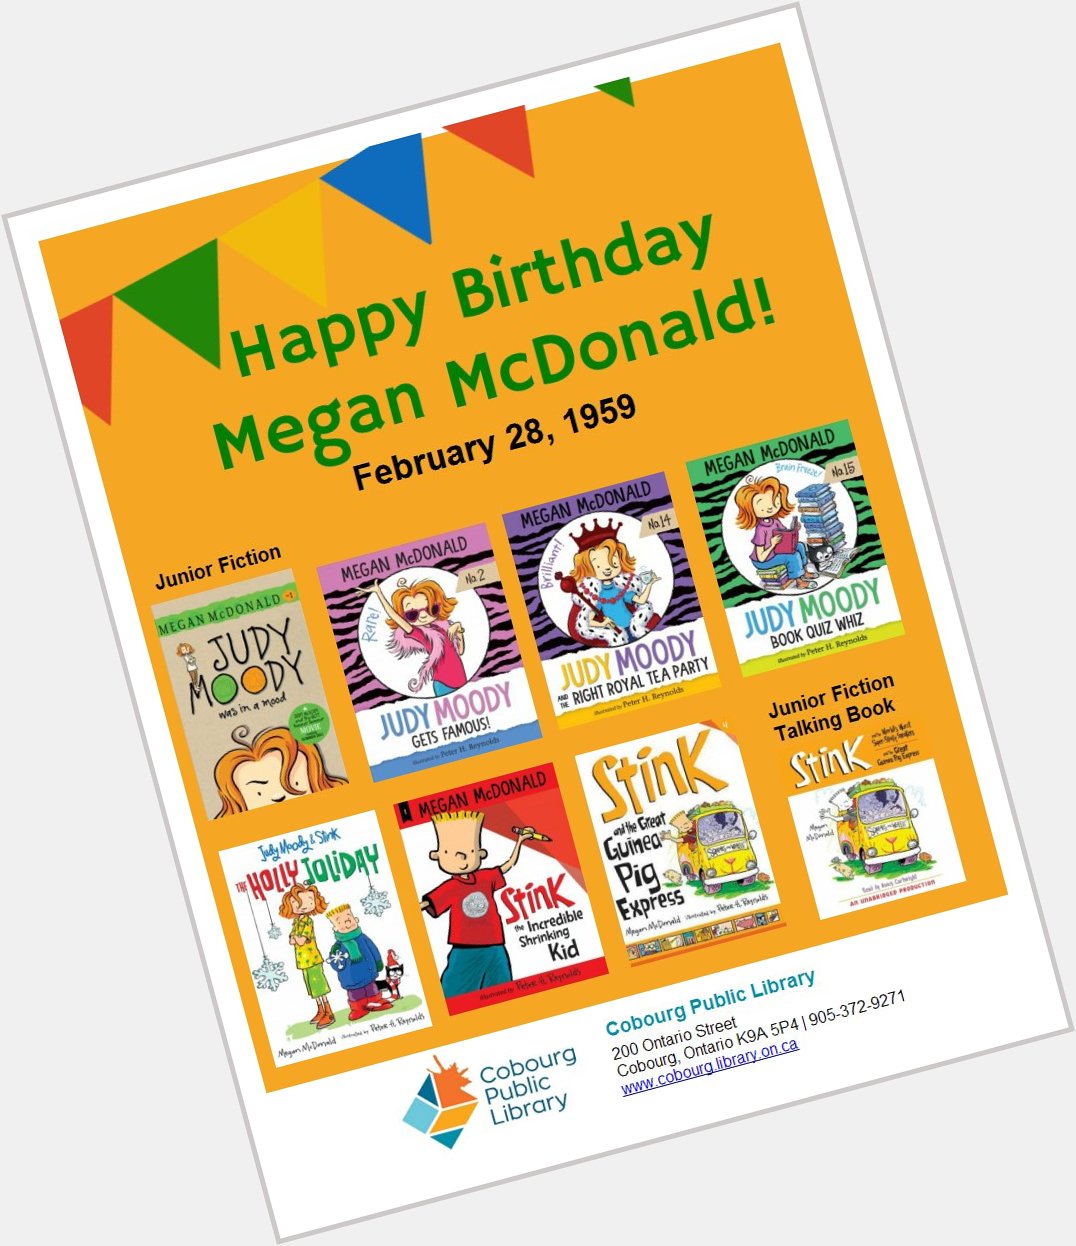 Happy Birthday Megan McDonald!  